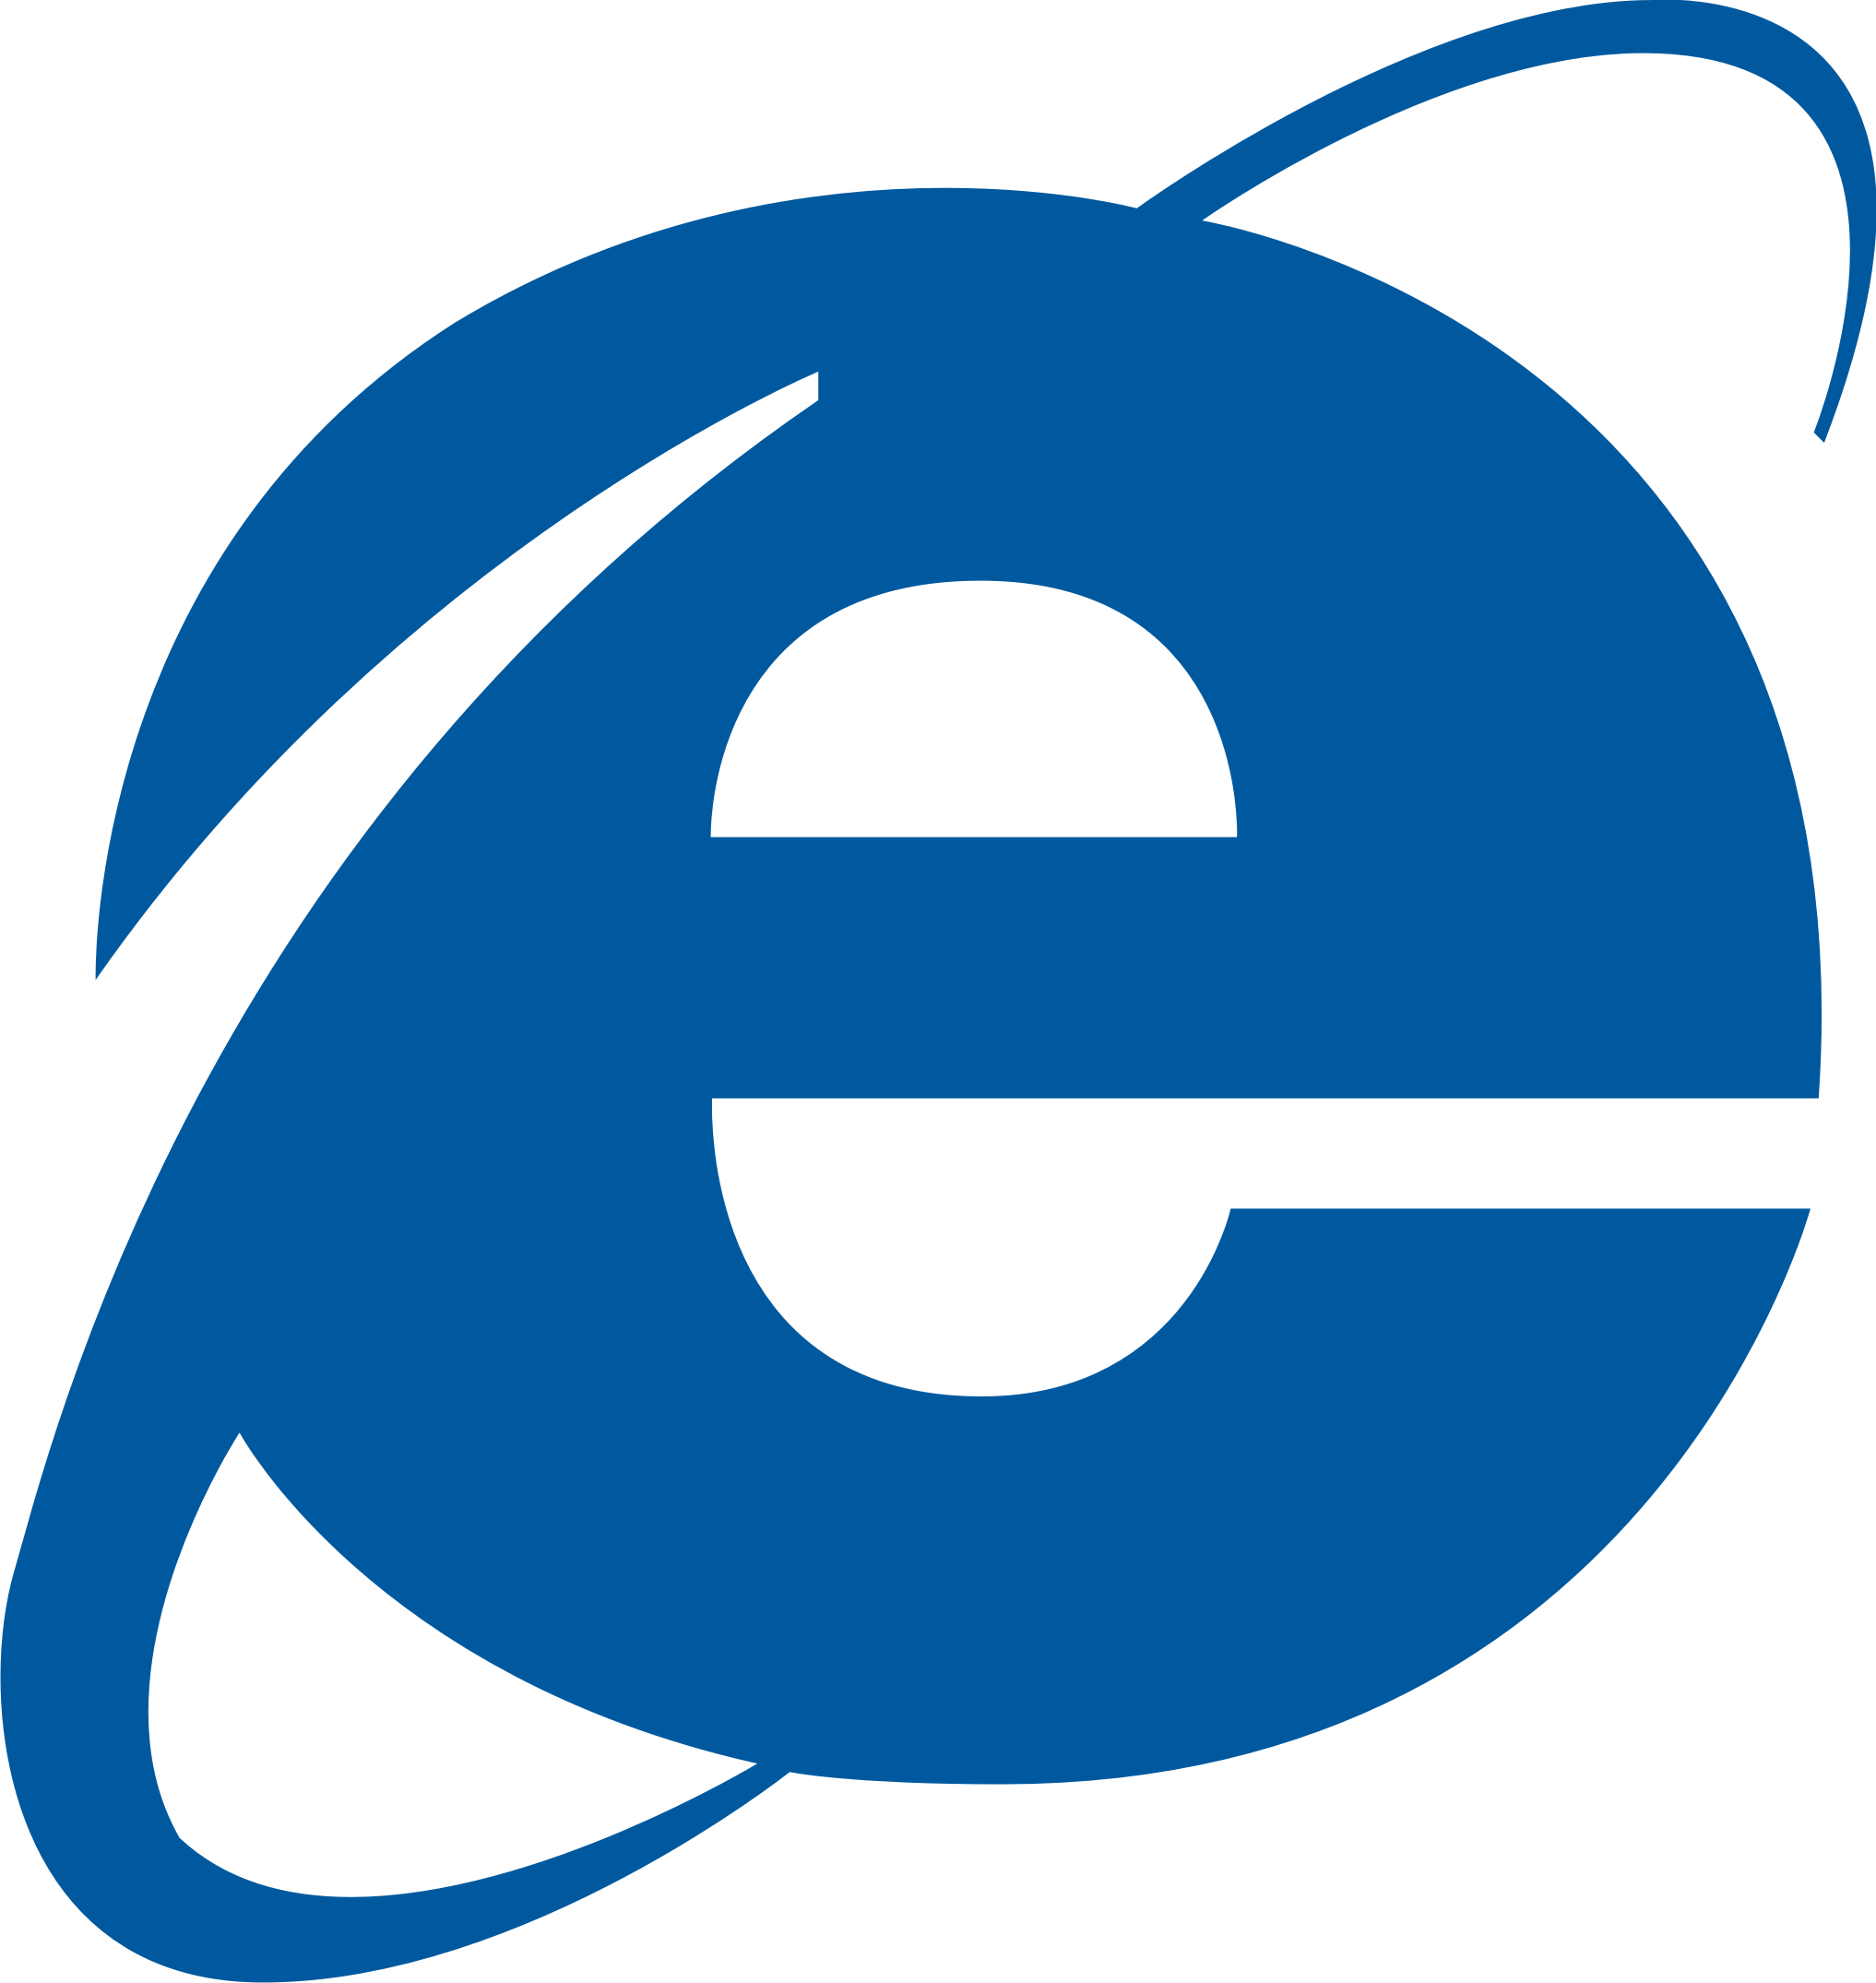 Internet Explorer logo PNG images free download - Internet Explorer Logo Transparent